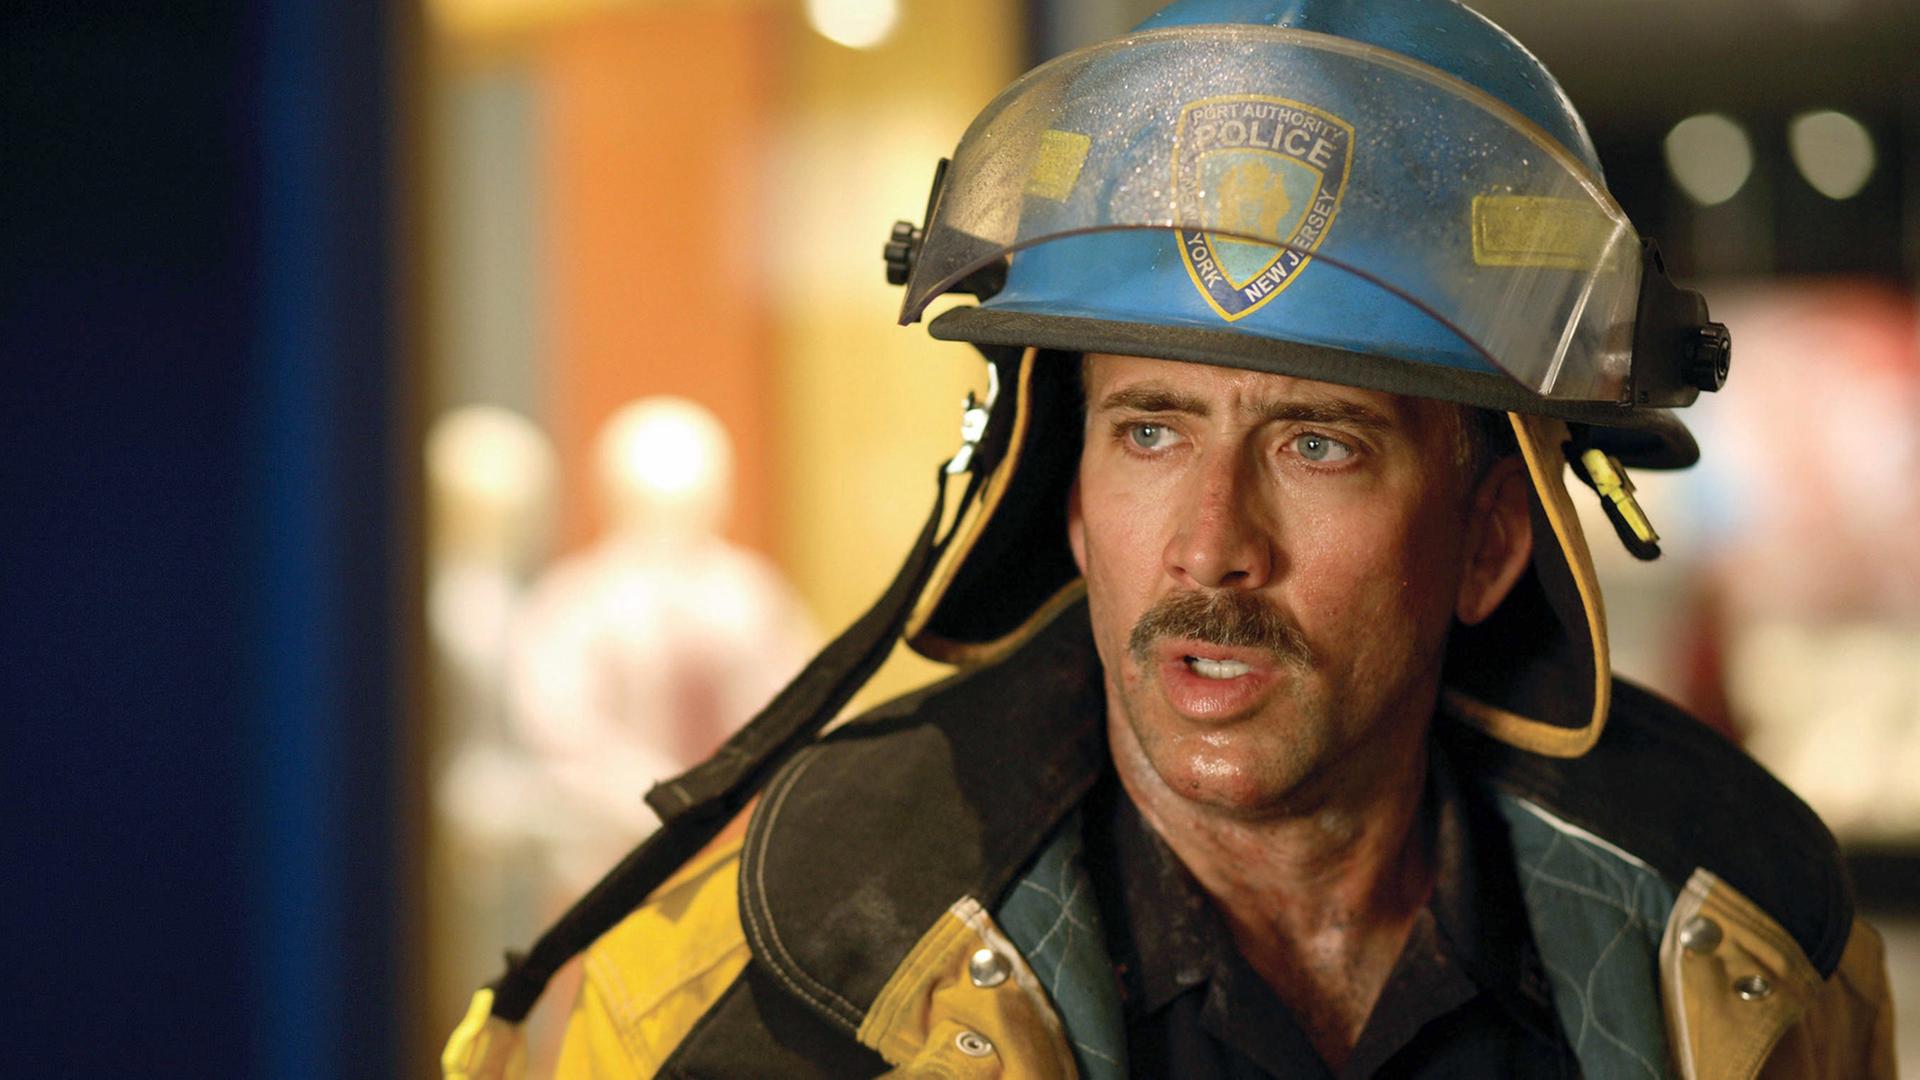 Nicolas Cage als Polizist John McLoughlin in dem Film "World Trade Center". Es ist die Geschichte von zwei heroischen Rettern, die noch in letzter Minute aus den Trümmern der Zwillingstürme geborgen werden konnten. Oscar-Preisträger Oliver Stone zeigt die verzweifelten Rettungsversuche von Feuerwehrleuten und der Polizei in den beiden Wolkenkratzern.